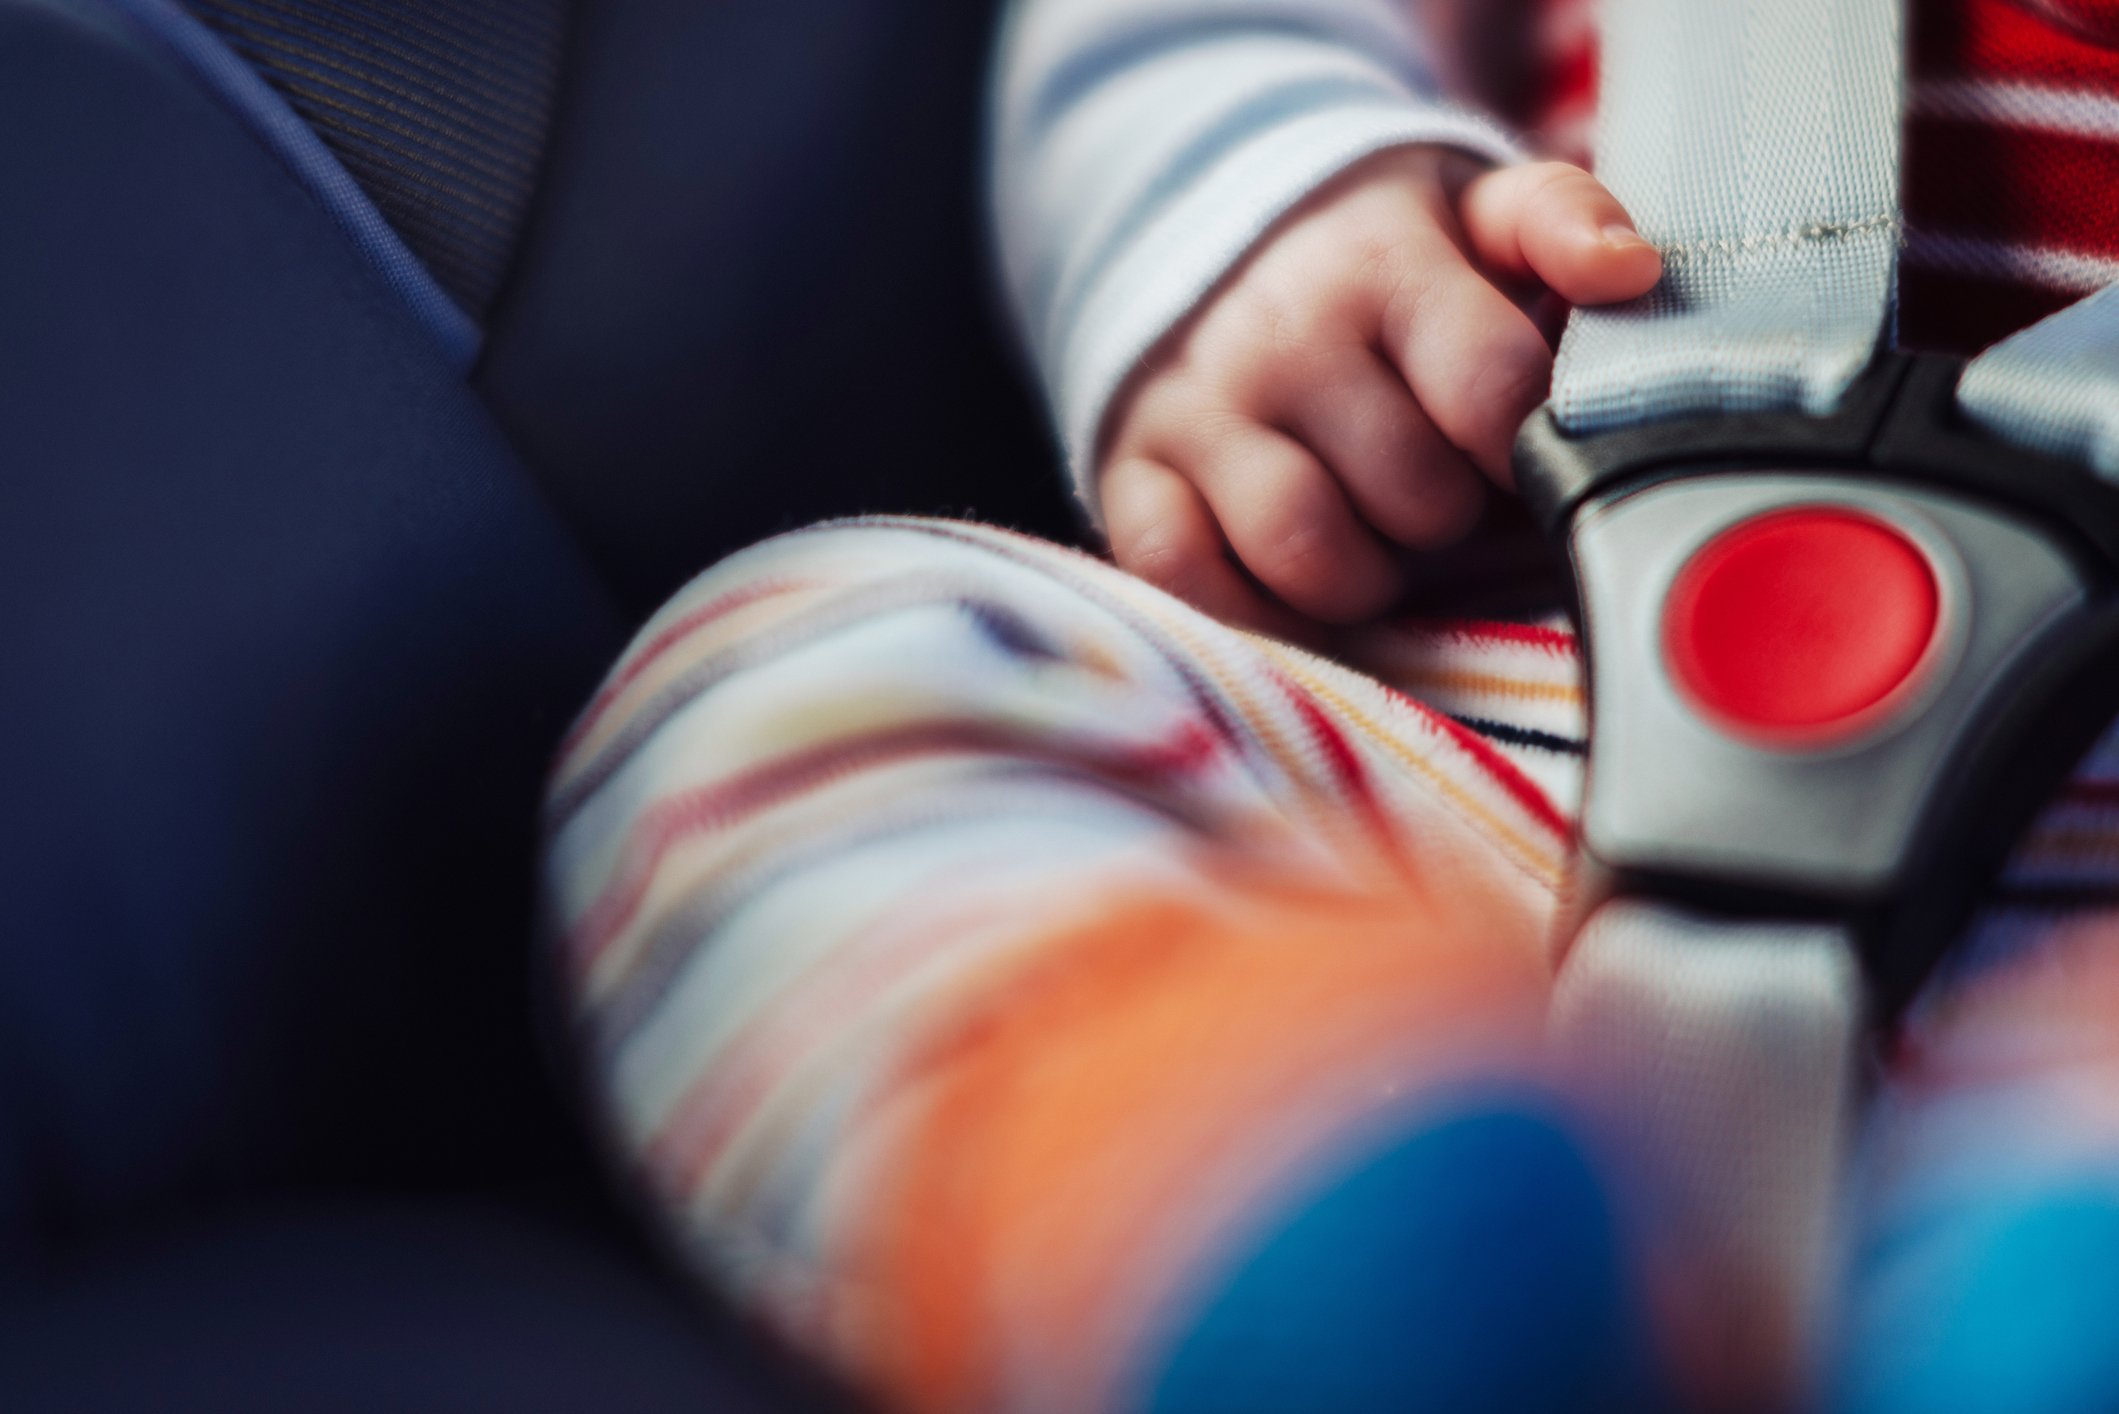 Bébé dans un siège auto. | Photo : Getty Images